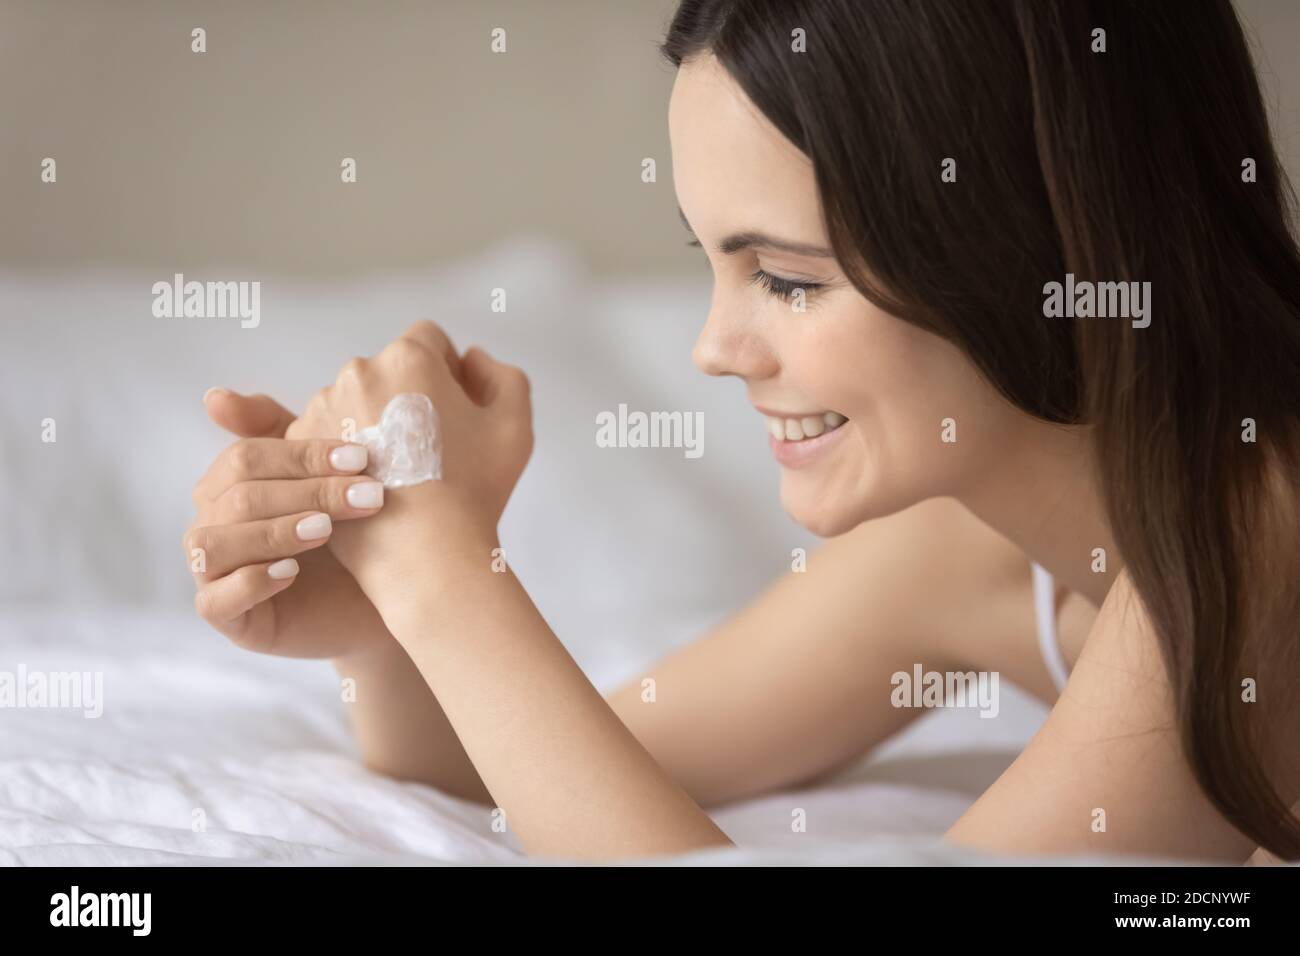 Contenu jeune femme appréciant les soins de beauté appliquant la lotion sur la main Banque D'Images